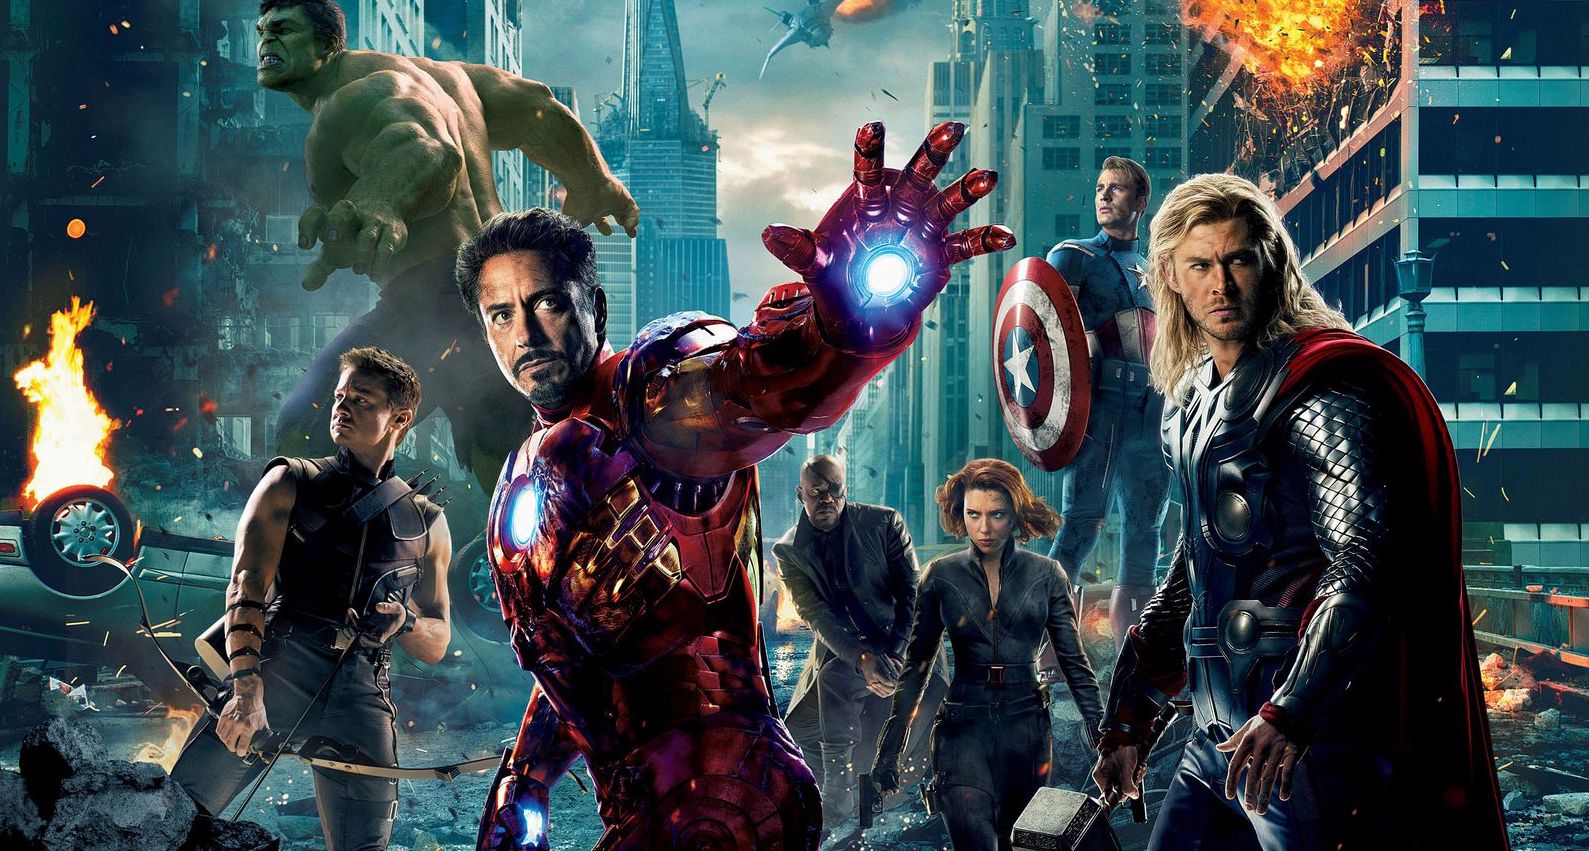 Avengers movie poster | Avengers Trivia